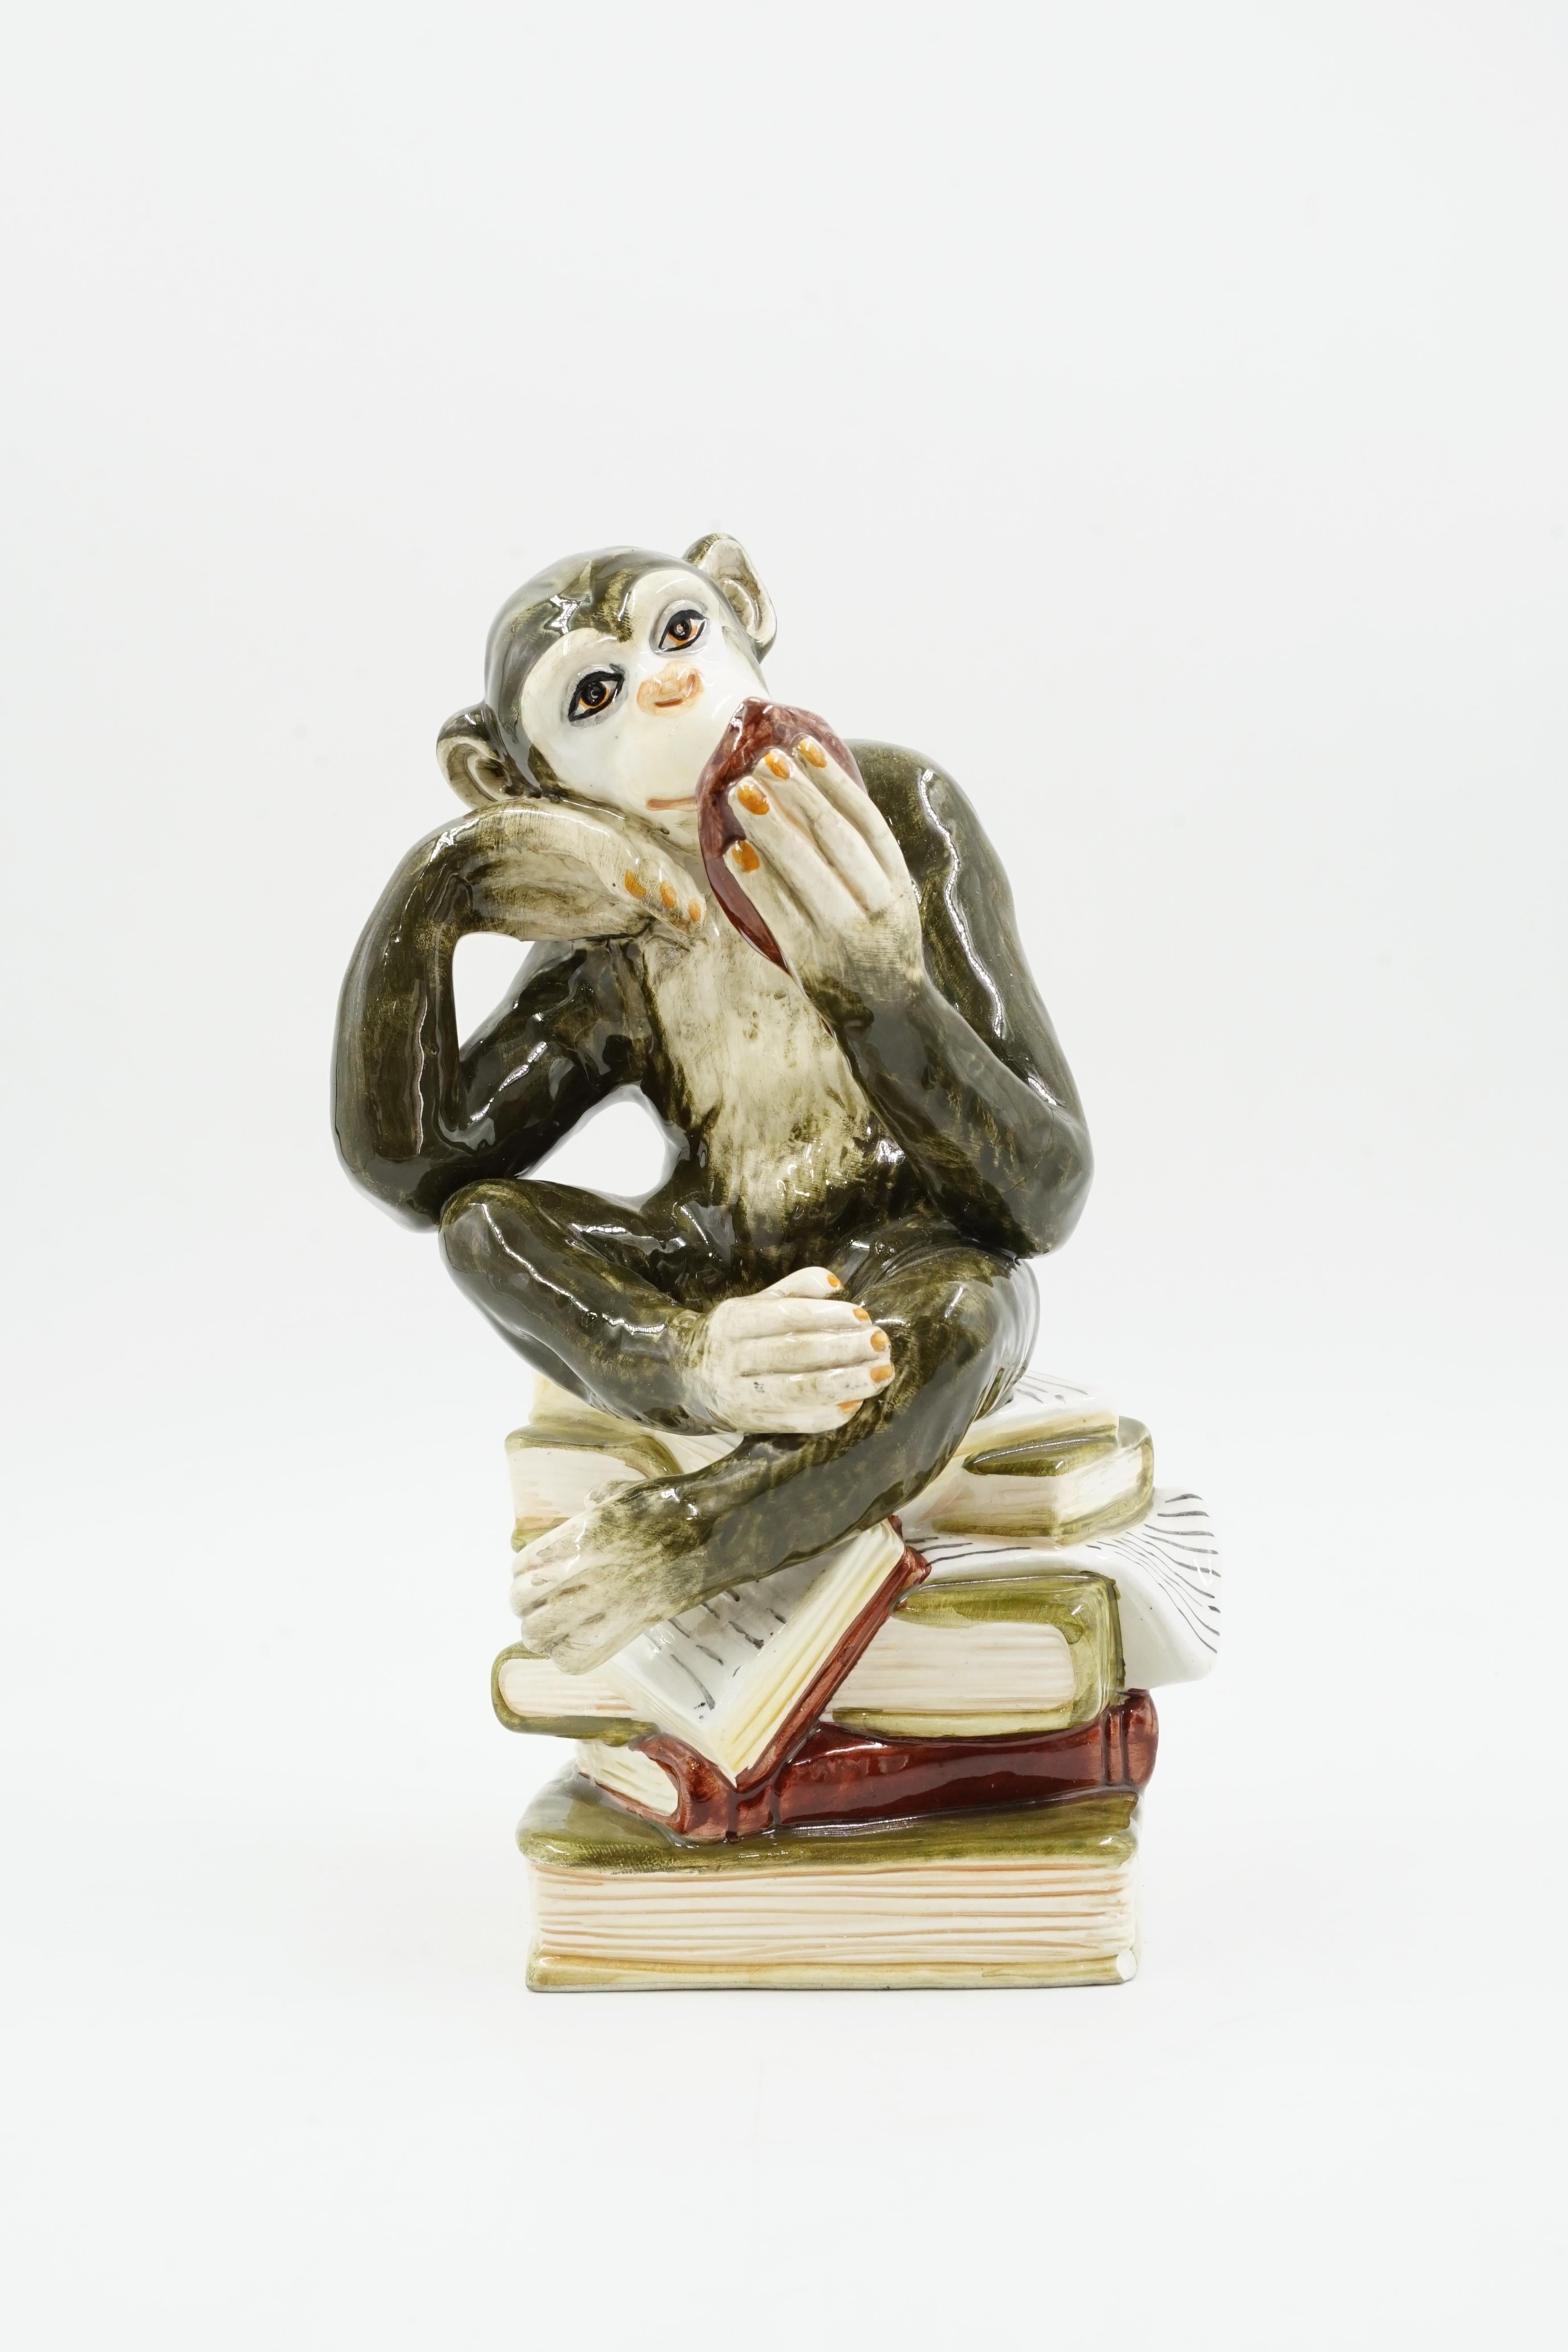 scultura di scimmia in ceramica
Modello di scimmia saggia
figura insolita di una scimmia che siede sui libri e si guarda allo specchio
dipinto a mano
condizioni eccellenti
circa 1950 origine Germania
materiali ceramici smaltati
Lo smalto e la